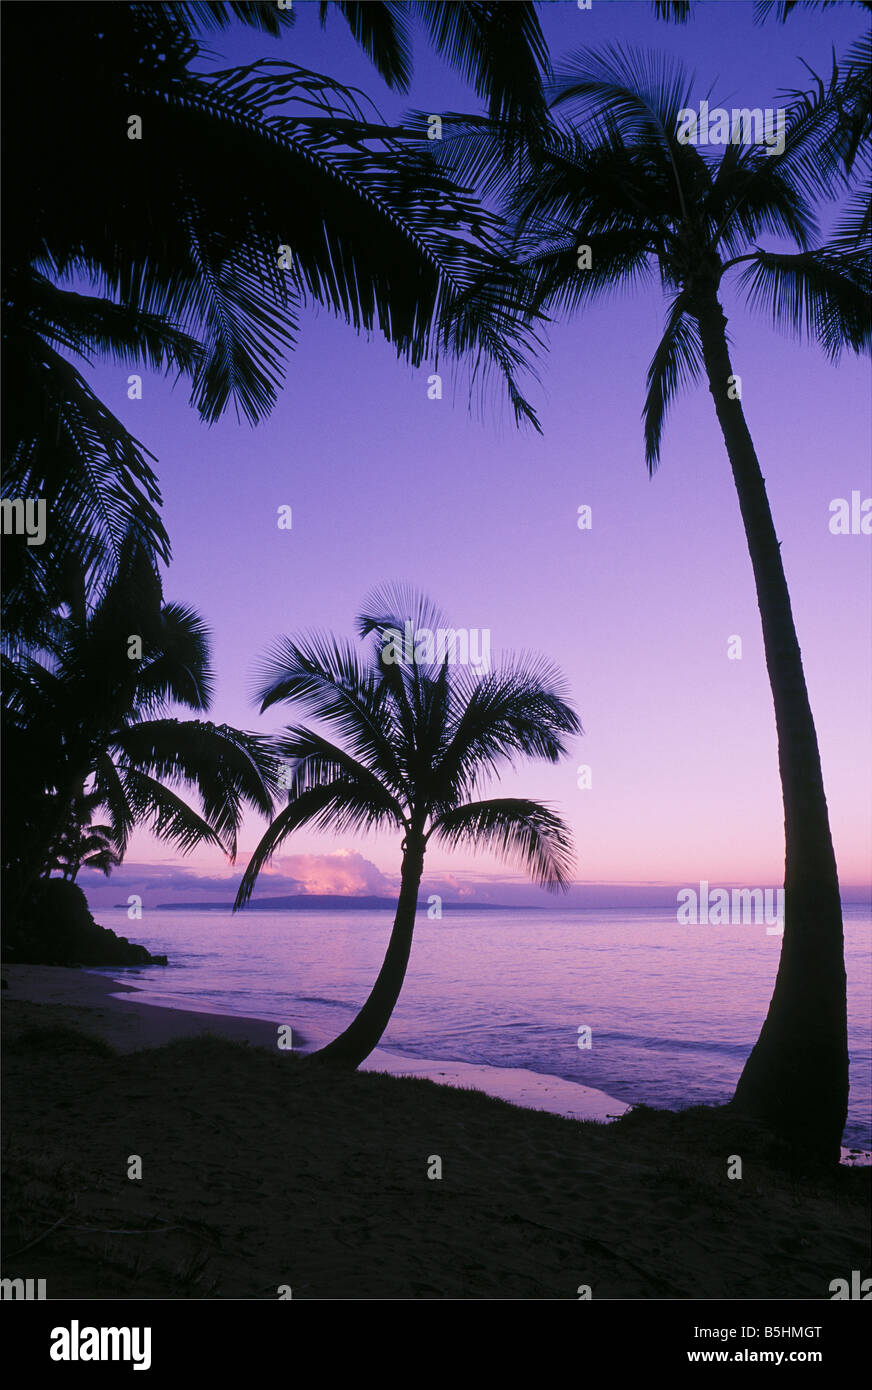 Palmiers et la plage à l'aube avec l'île de Hawaii Hawaii Maui Kihei à distance Banque D'Images